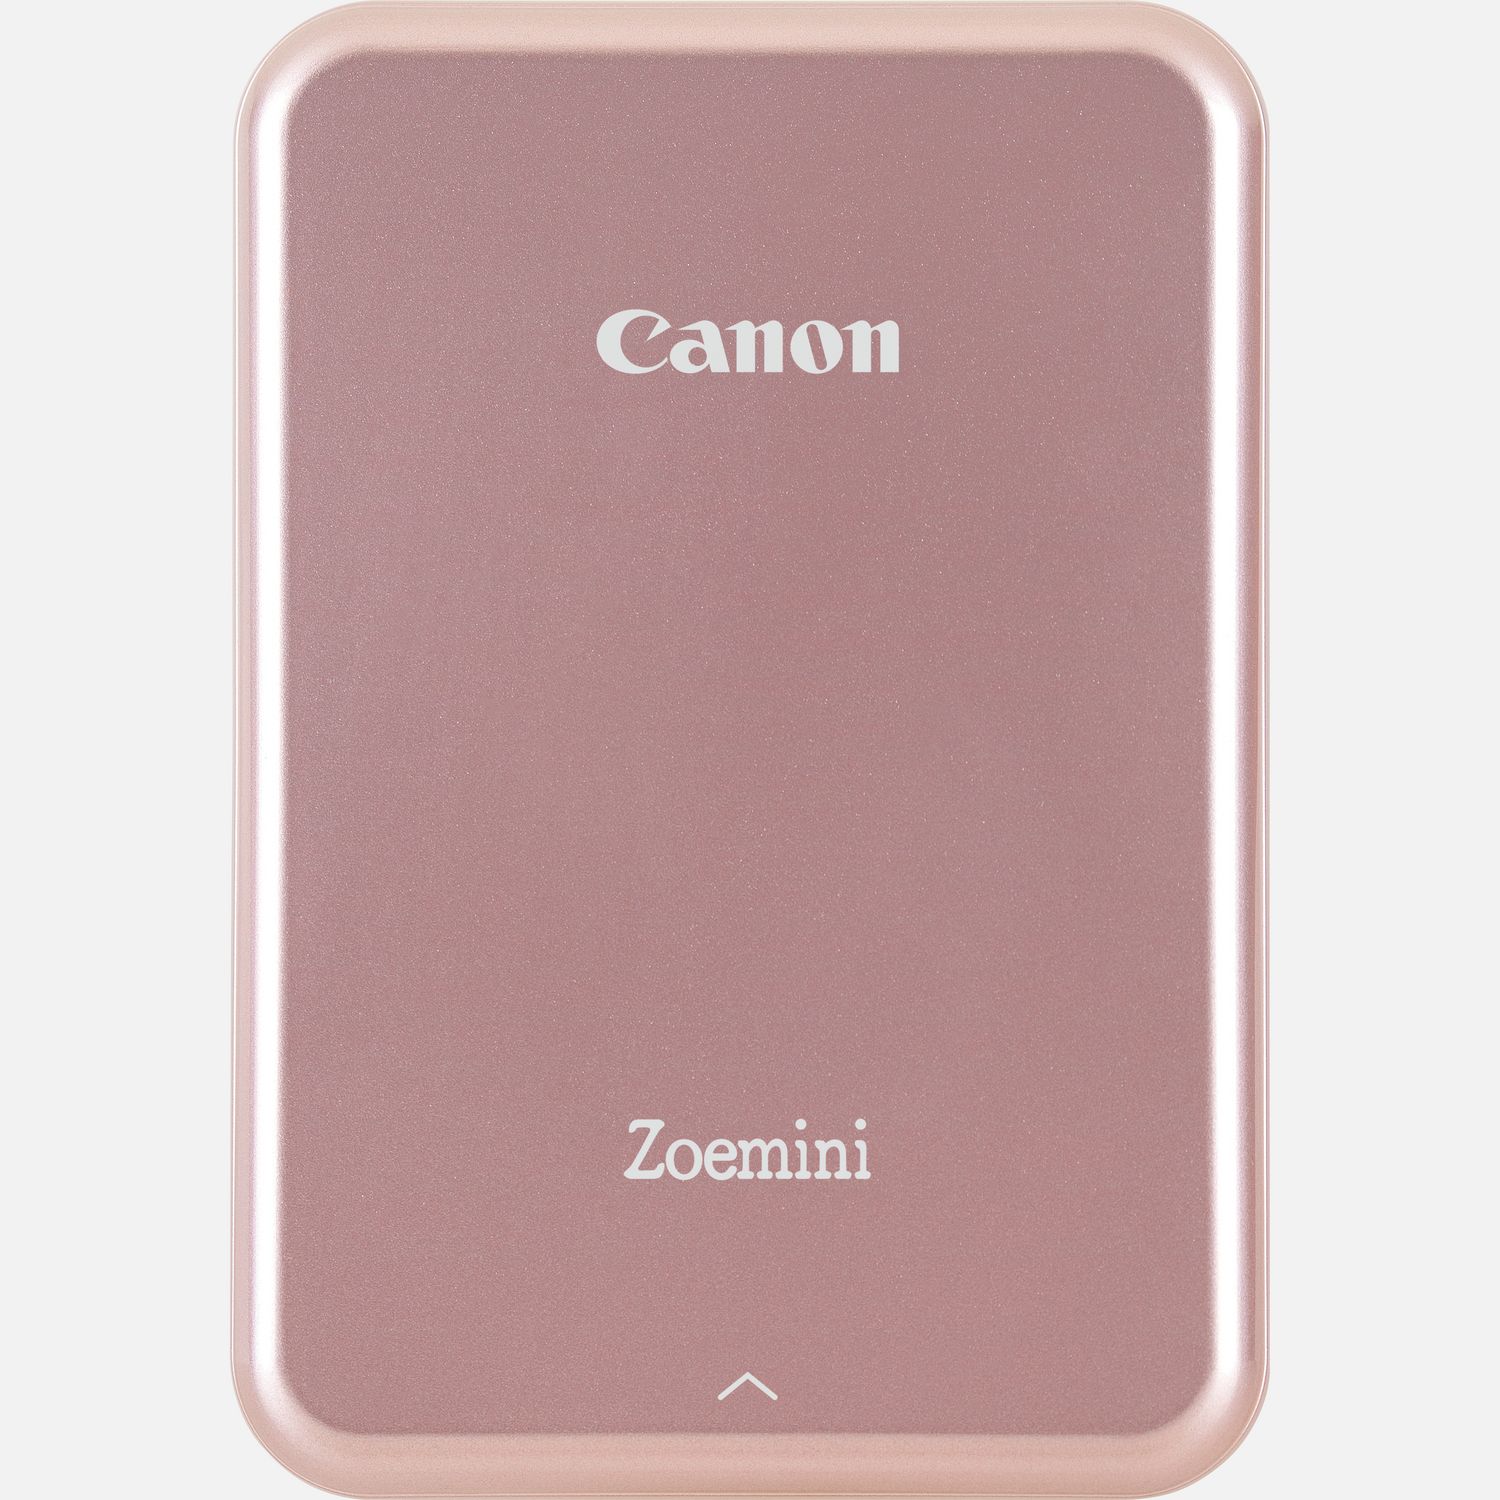 Image of Stampante fotografica portatile Canon Zoemini, oro rosa